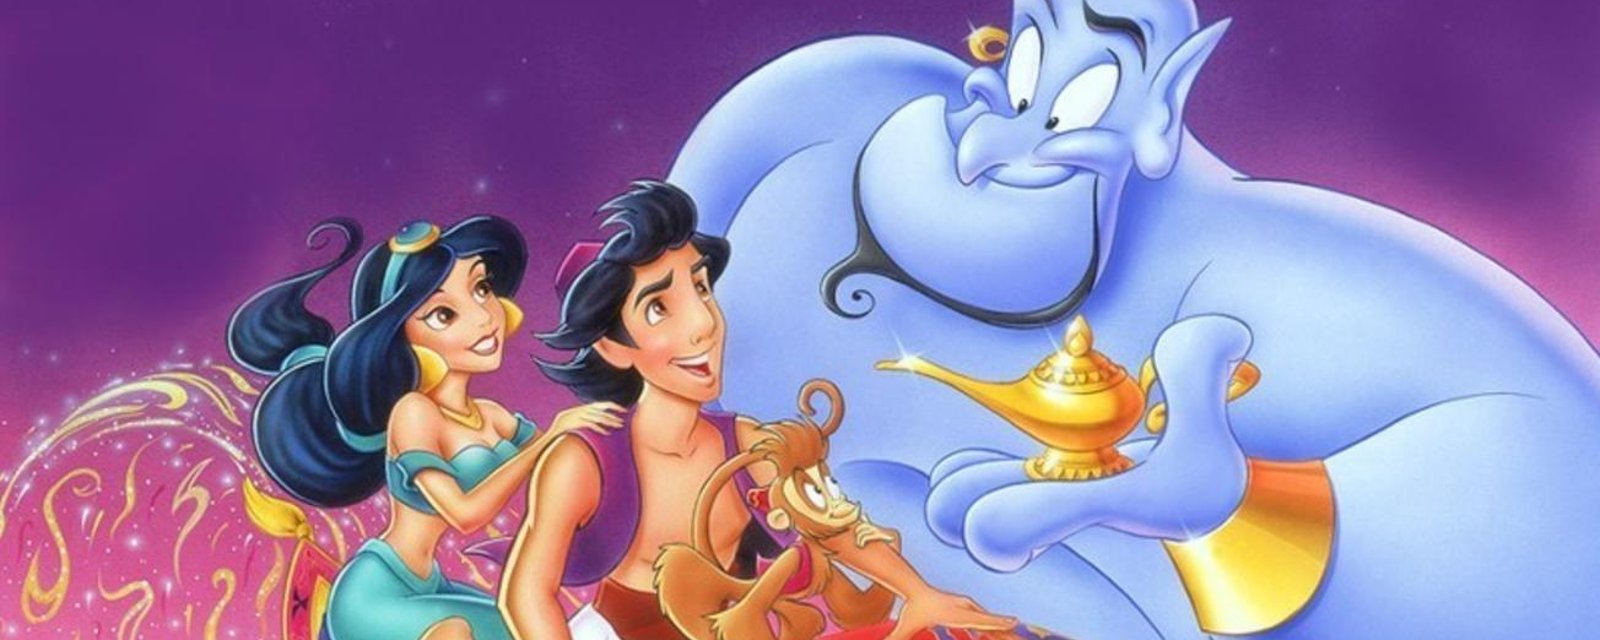 L'acteur qui interprétera Aladin dans le nouveau film de Disney risque d'en faire baver plusieurs!